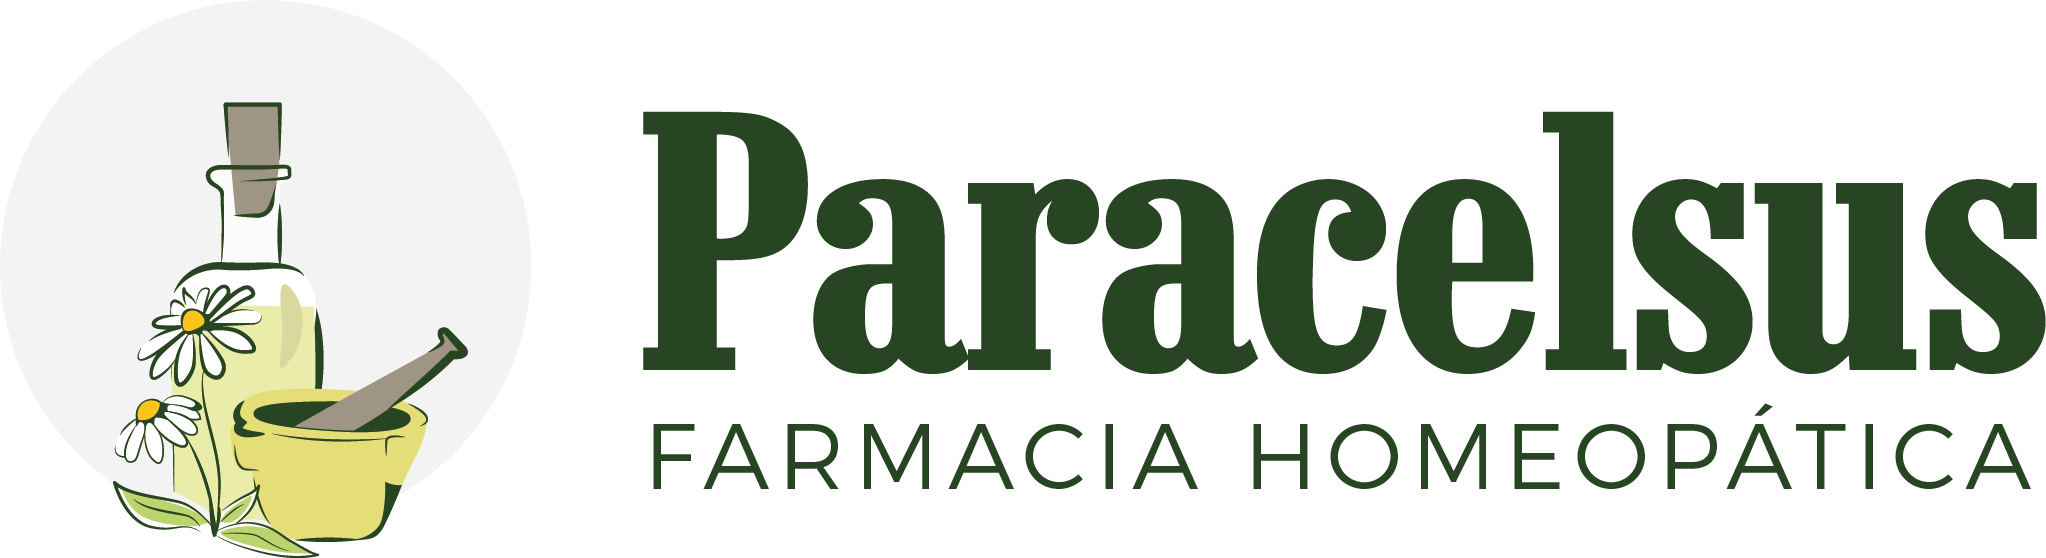 Farmacia Paracelsus